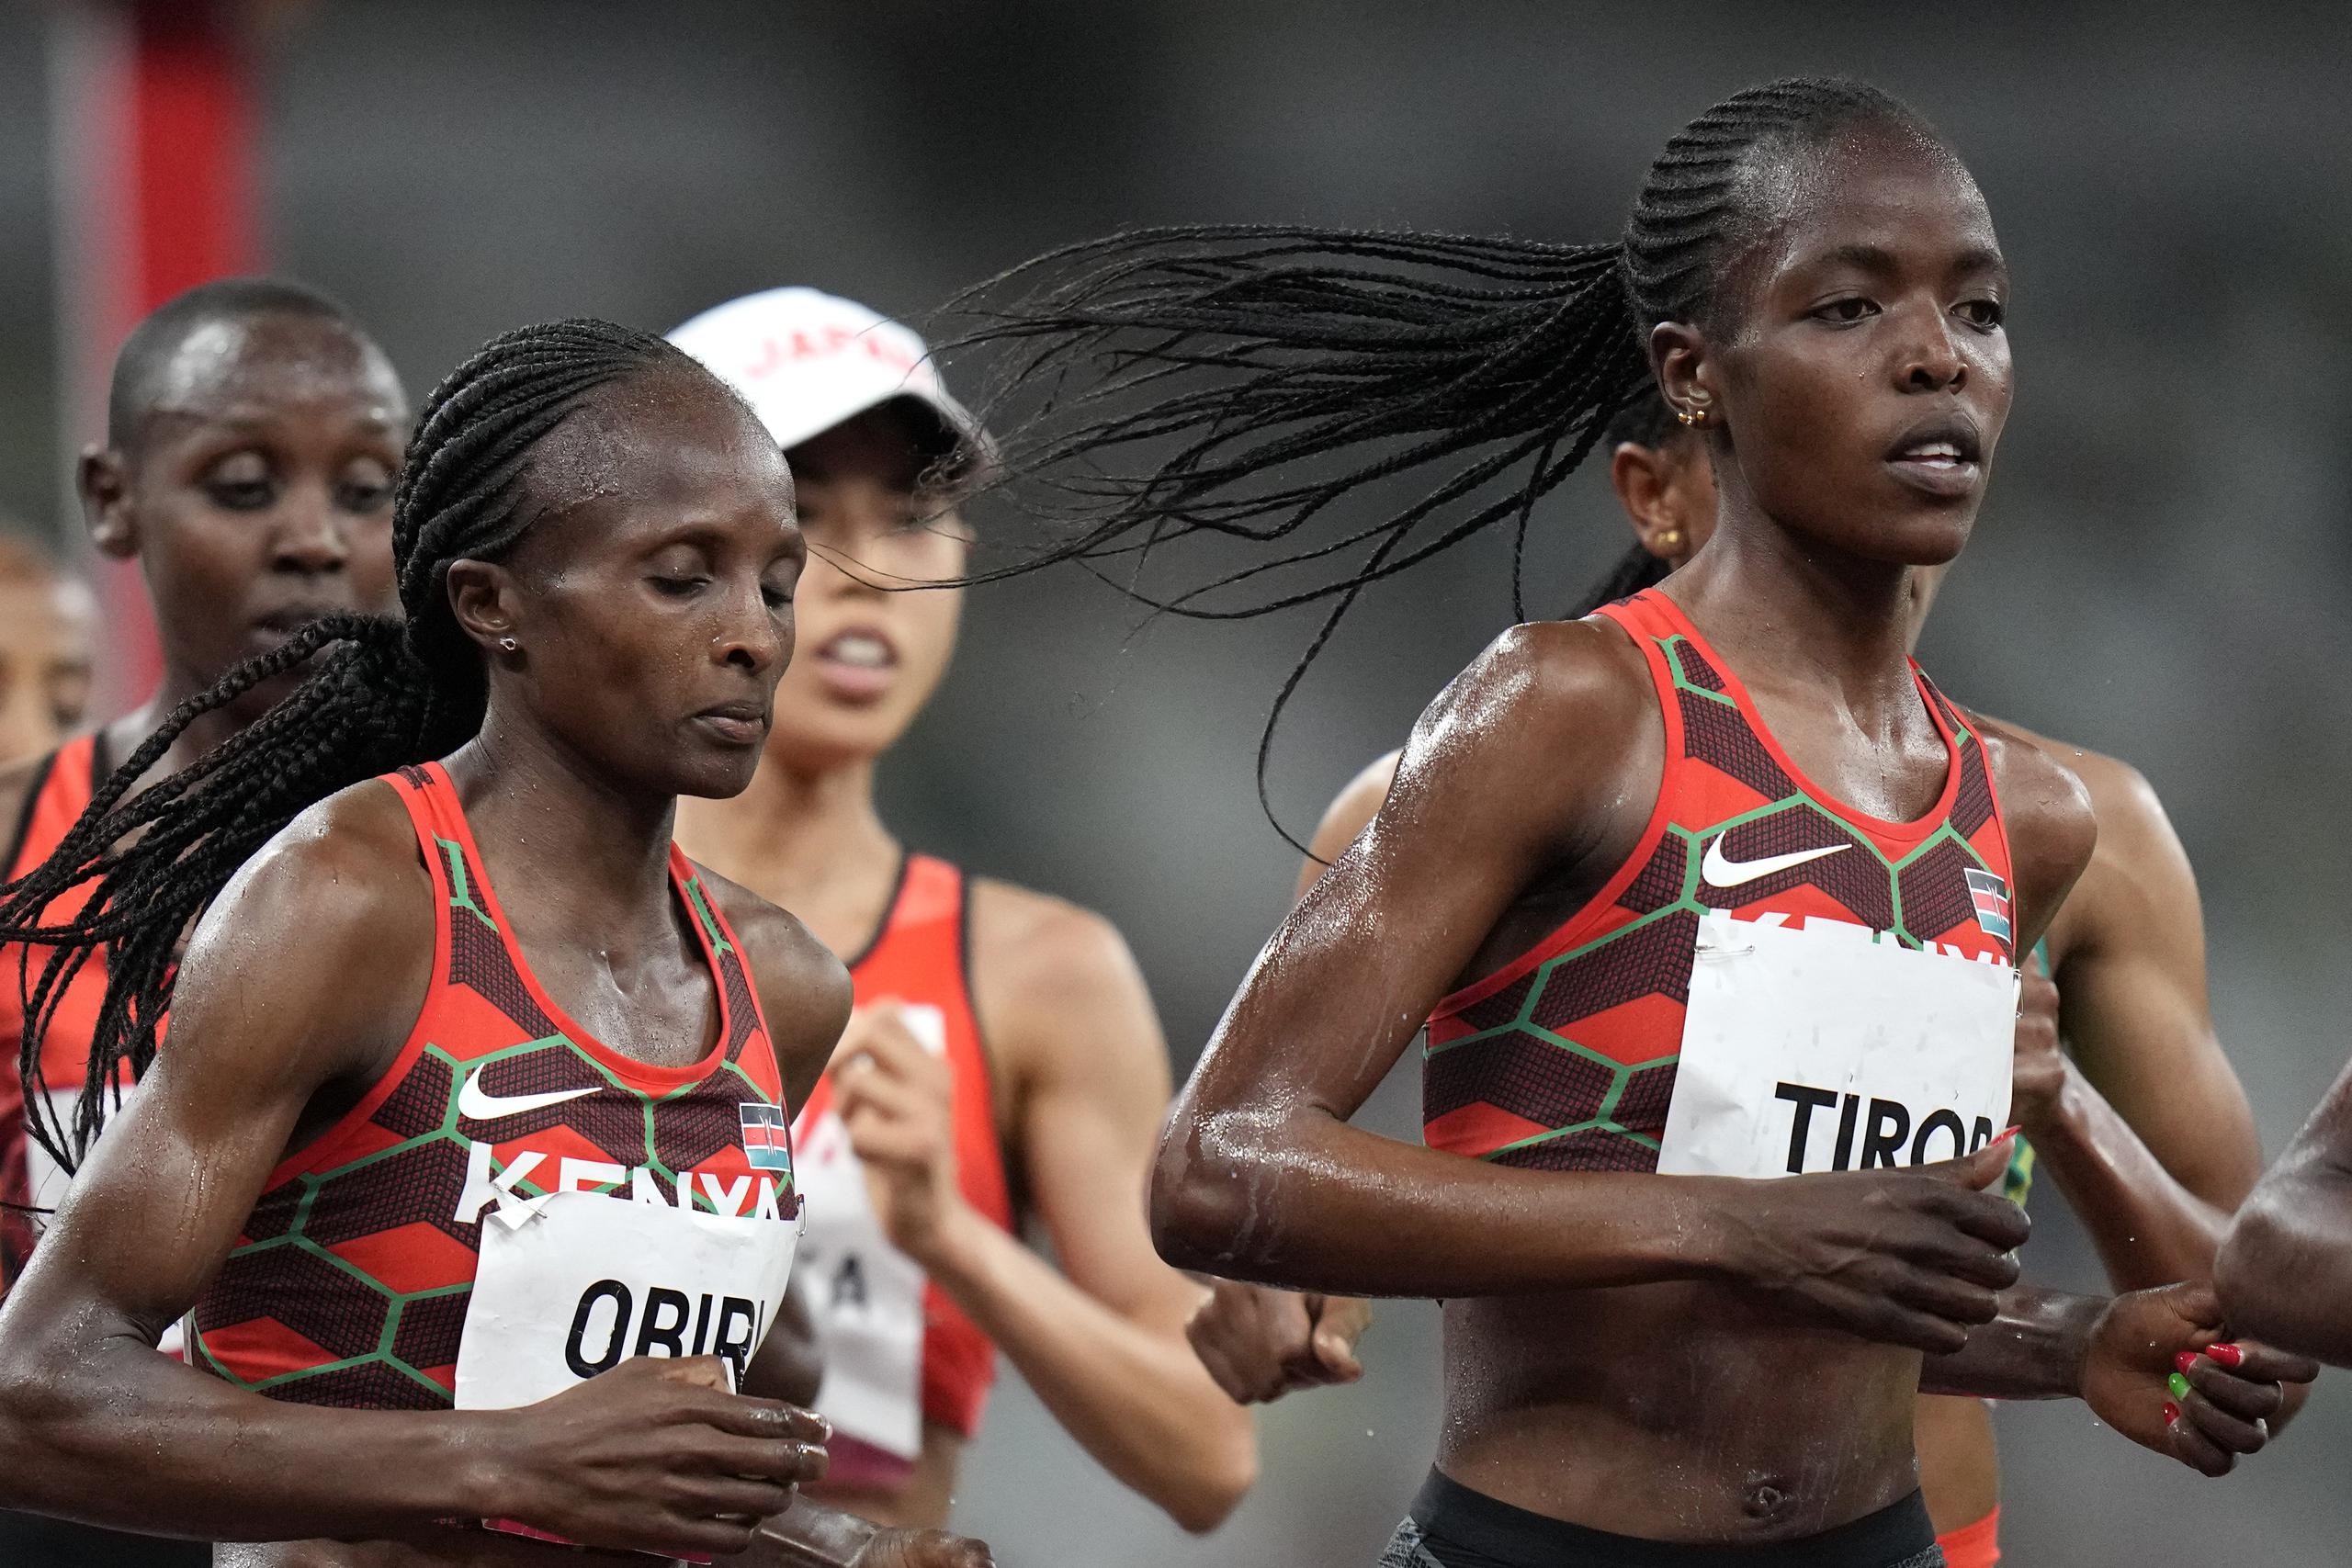 Agnes Tirop -al frente- fue medallista en los Campeonatos Mundiales 2017 y 2019 para Kenia.